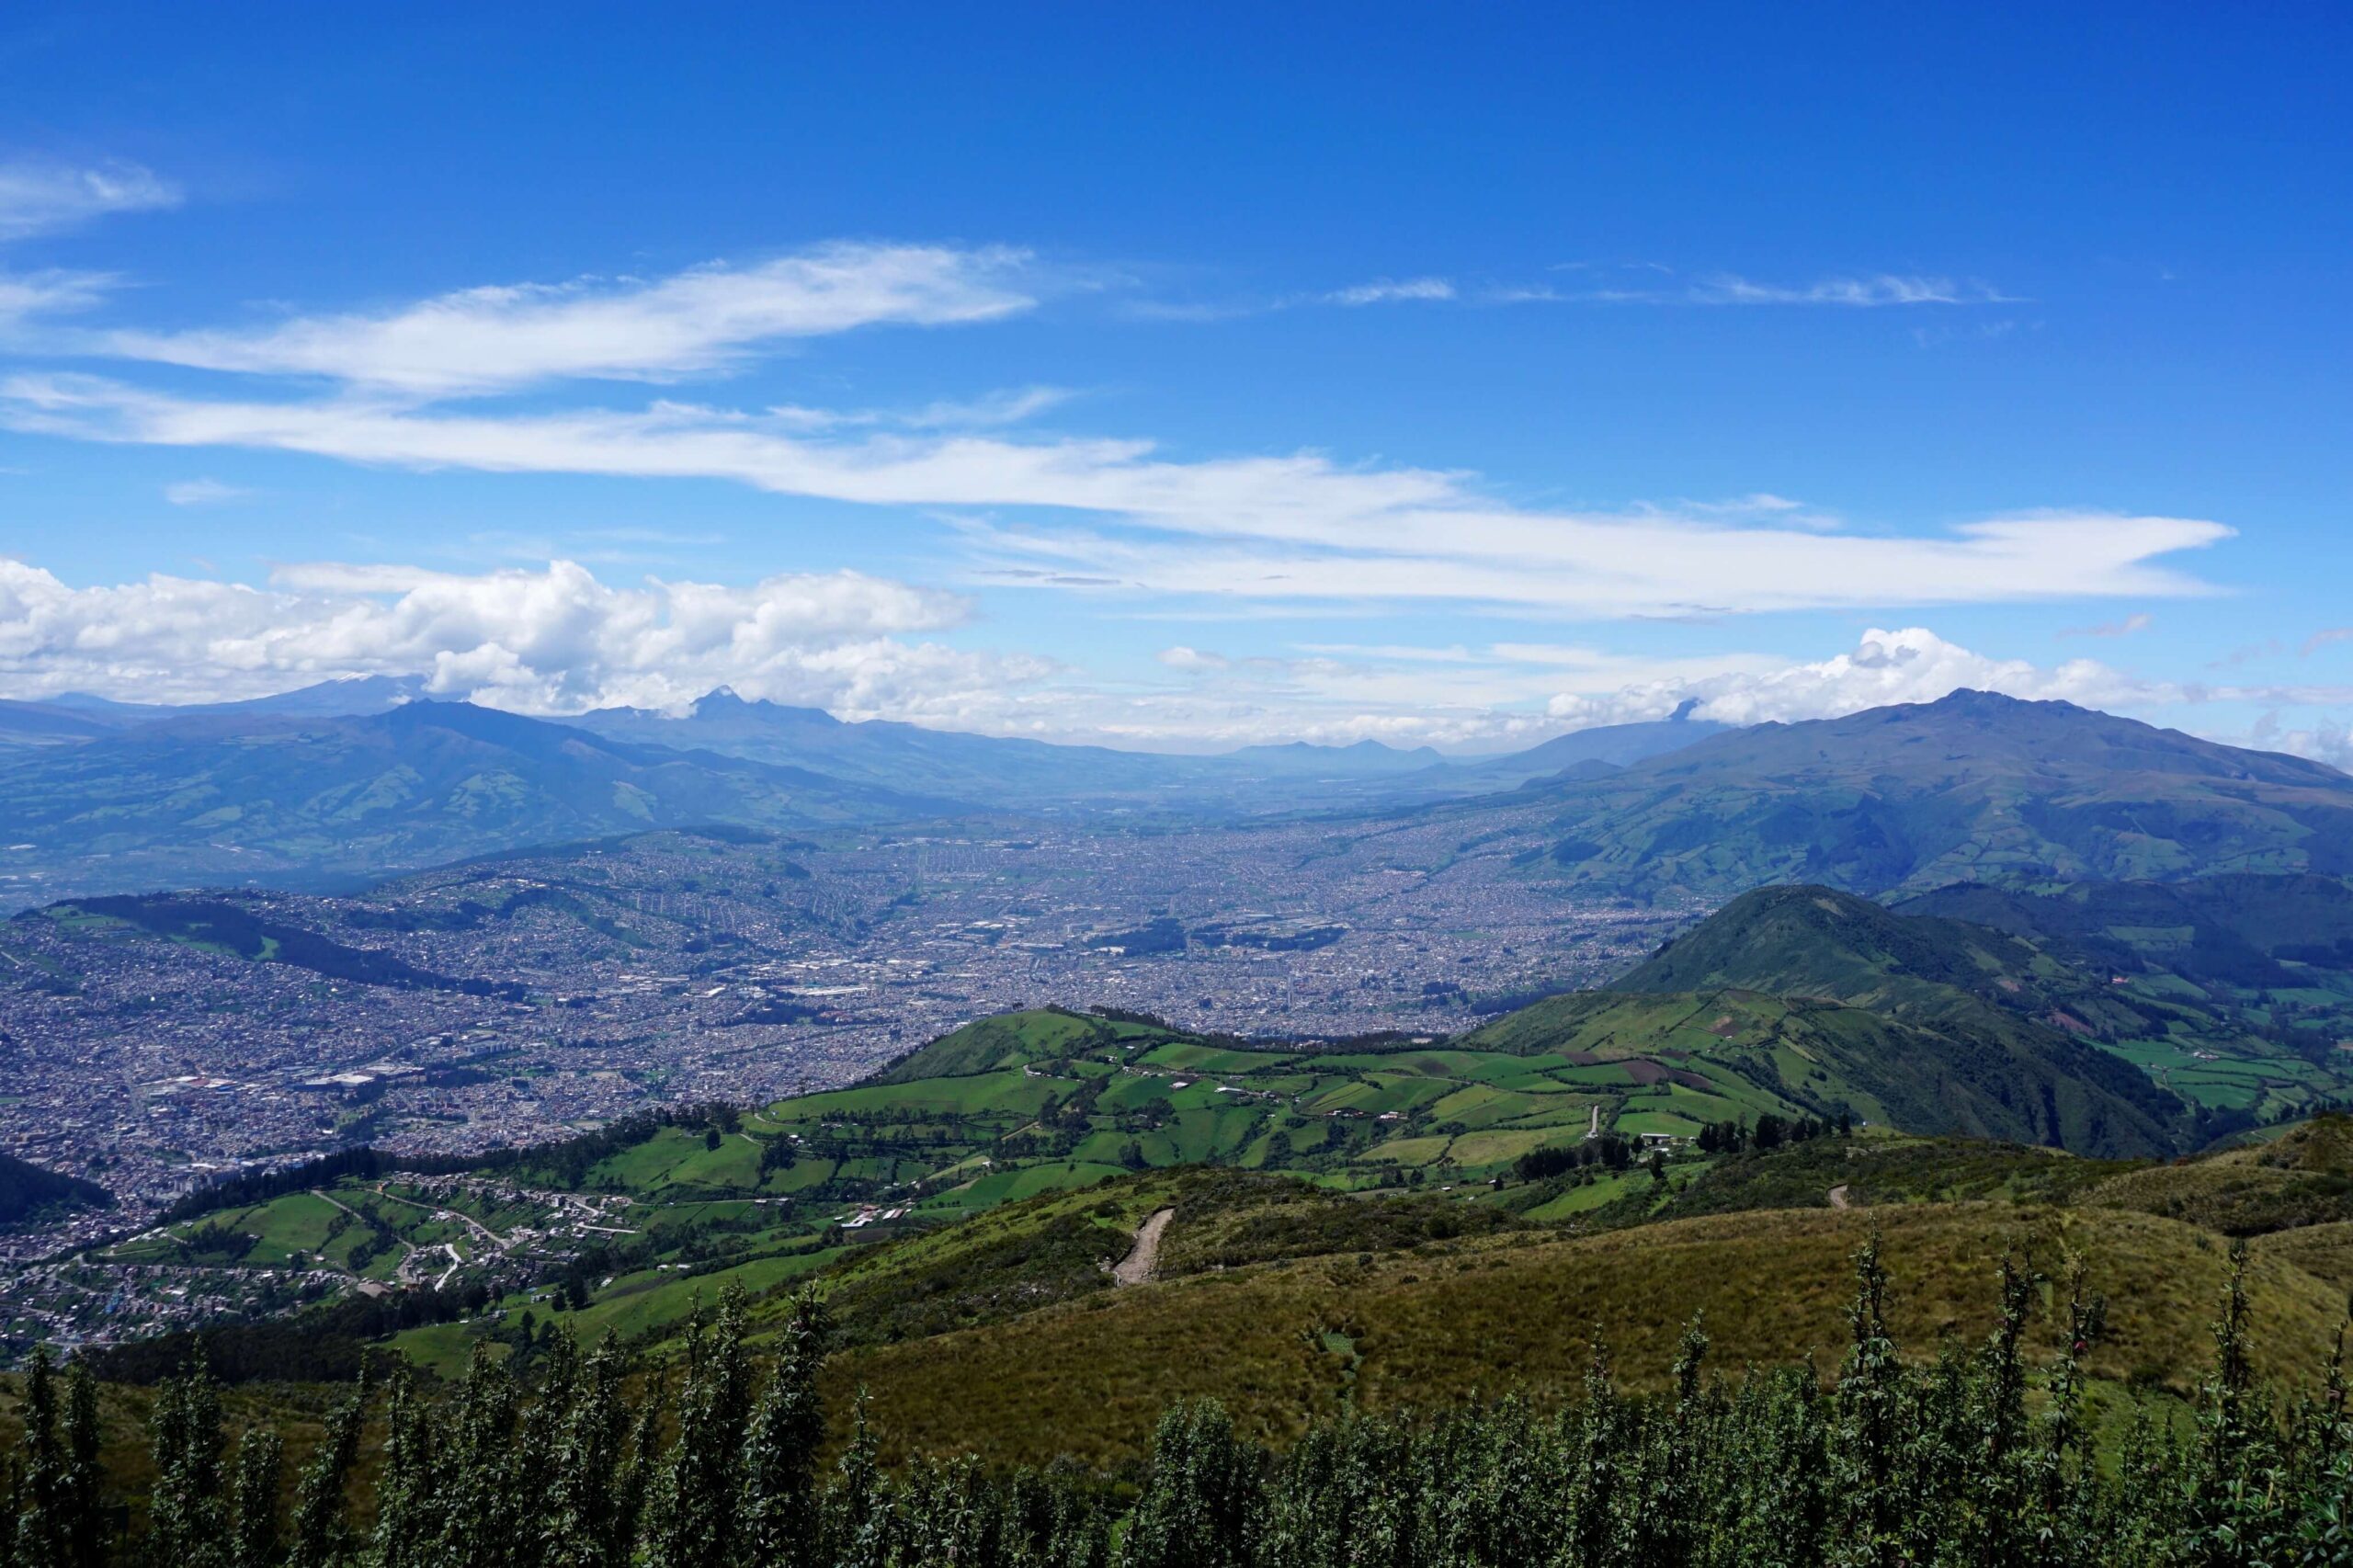 View of Mirador de los volcanes